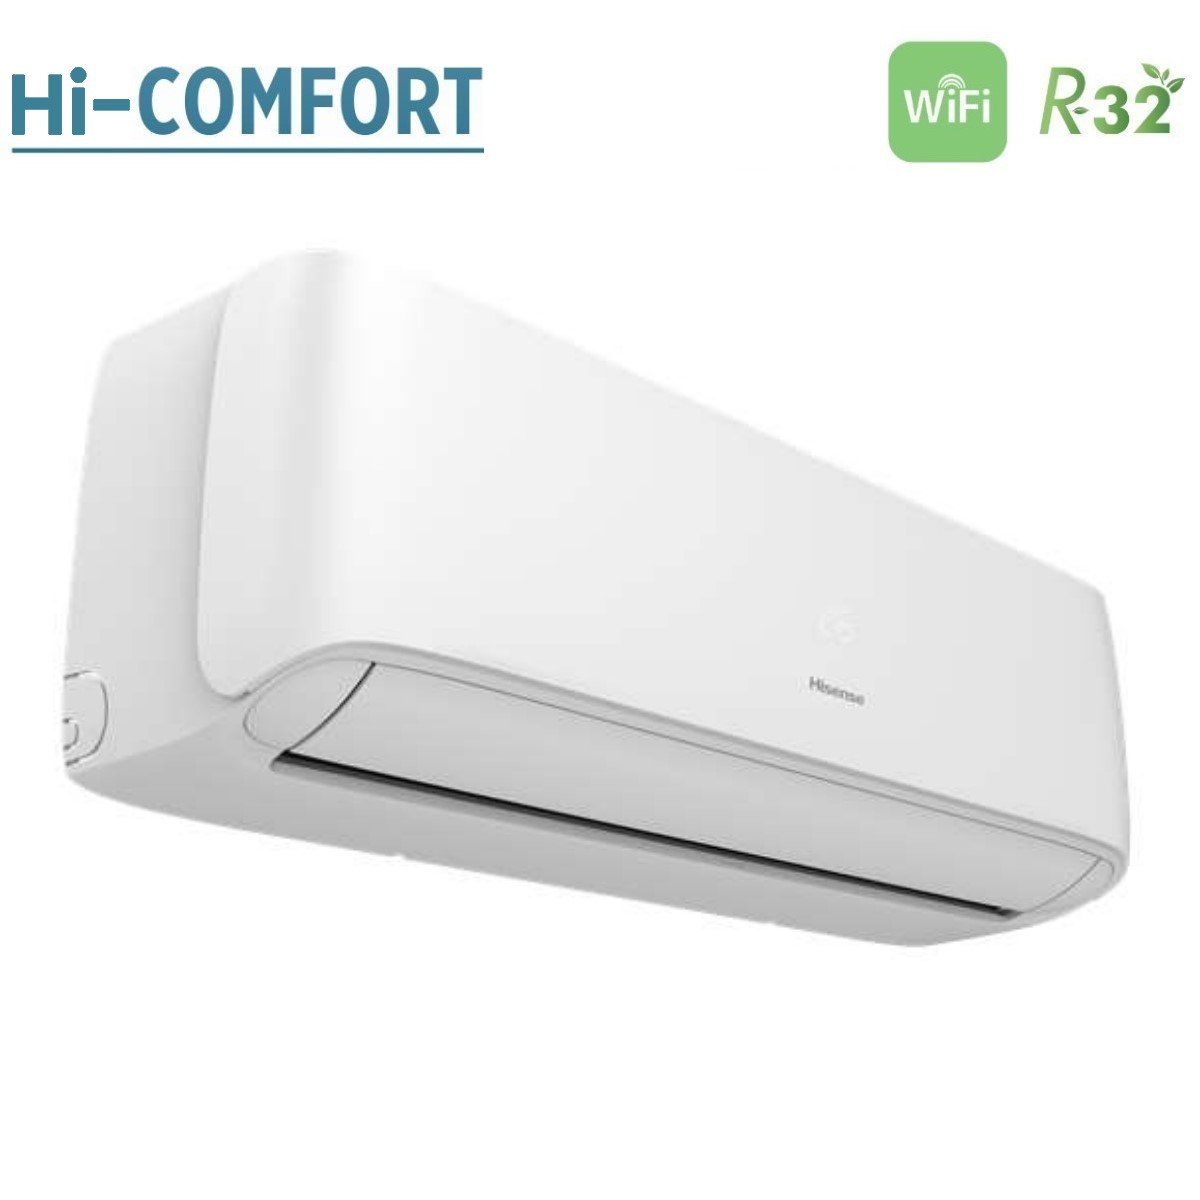 immagine-3-hisense-climatizzatore-condizionatore-hisense-dual-split-inverter-serie-hi-comfort-1212-con-2amw50u4rxa-r-32-wi-fi-integrato-1200012000-novita